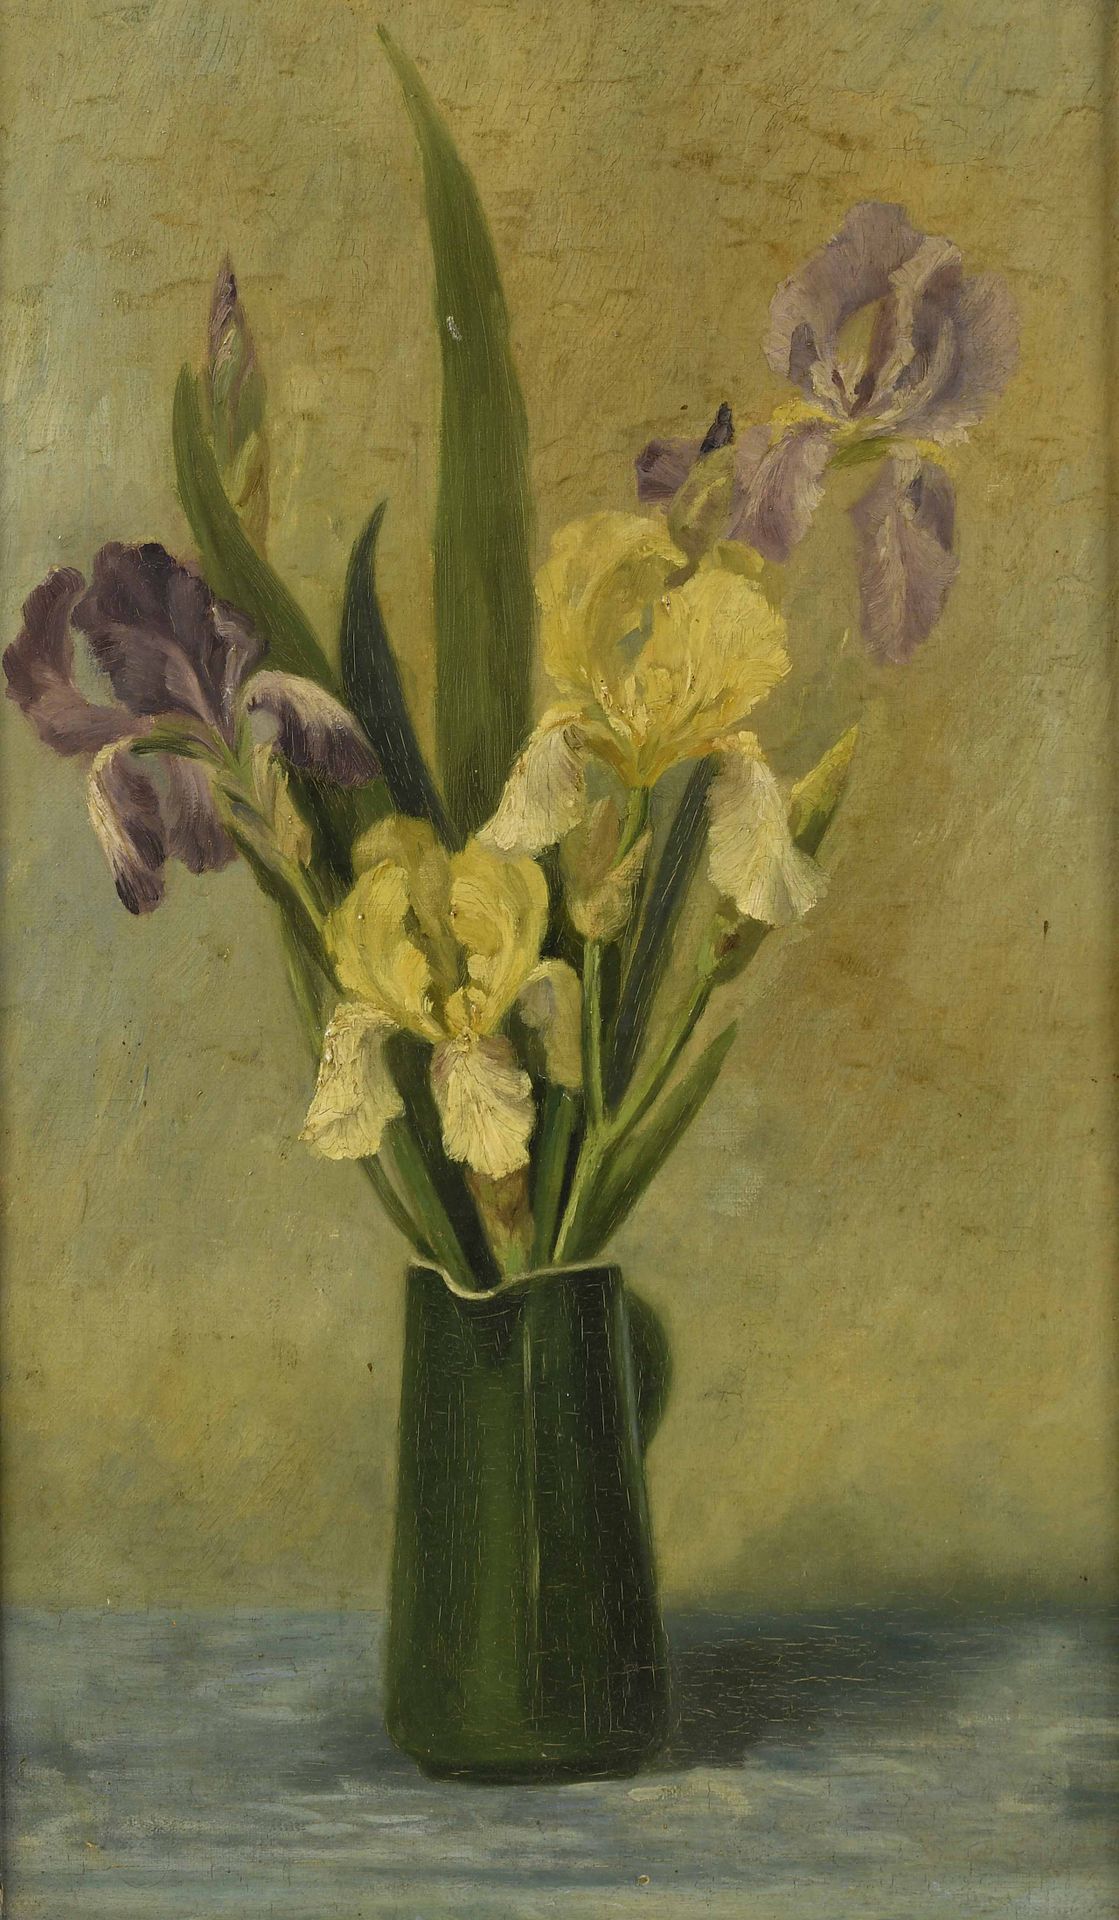 Null Iris jaunes et mauves
Huile sur toile.
55 x 33 cm